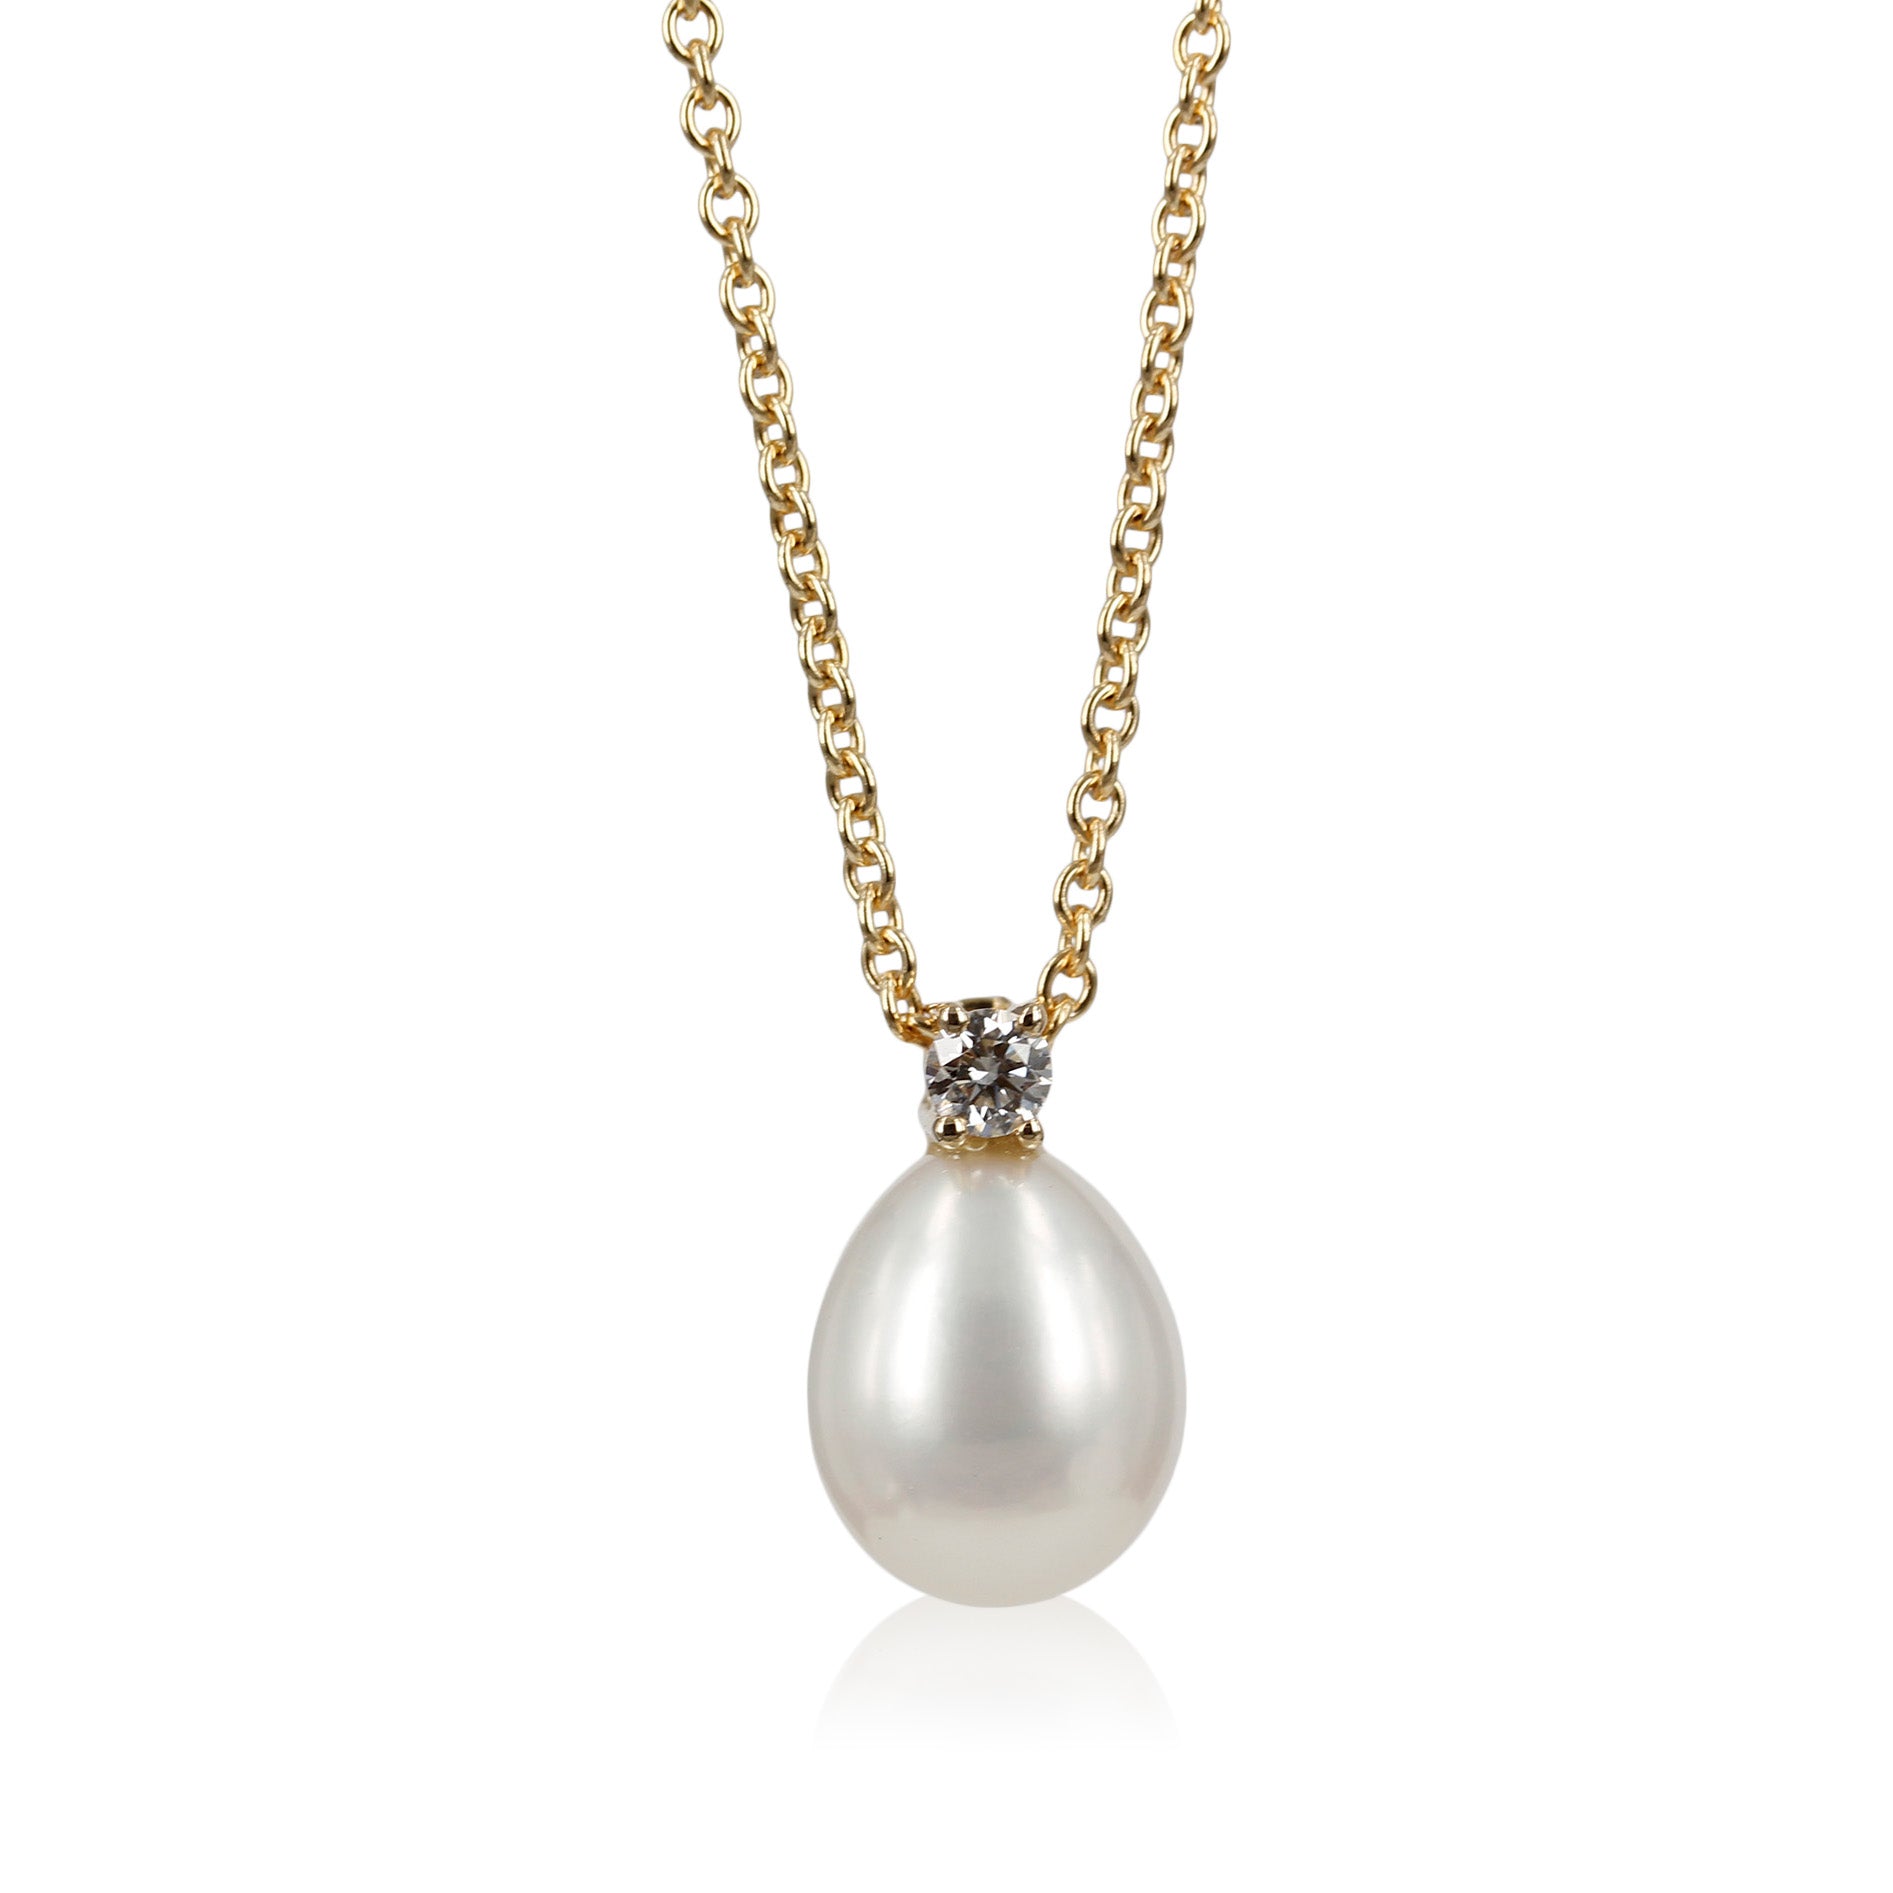 Perle vedhæng - 14 kt. Klassisk perle med diamant   Smukt Vedhæng med hvid ferskvandsperle og smuk brillant slebet diamant, du kan vælge vedhænget i flere størrelser.